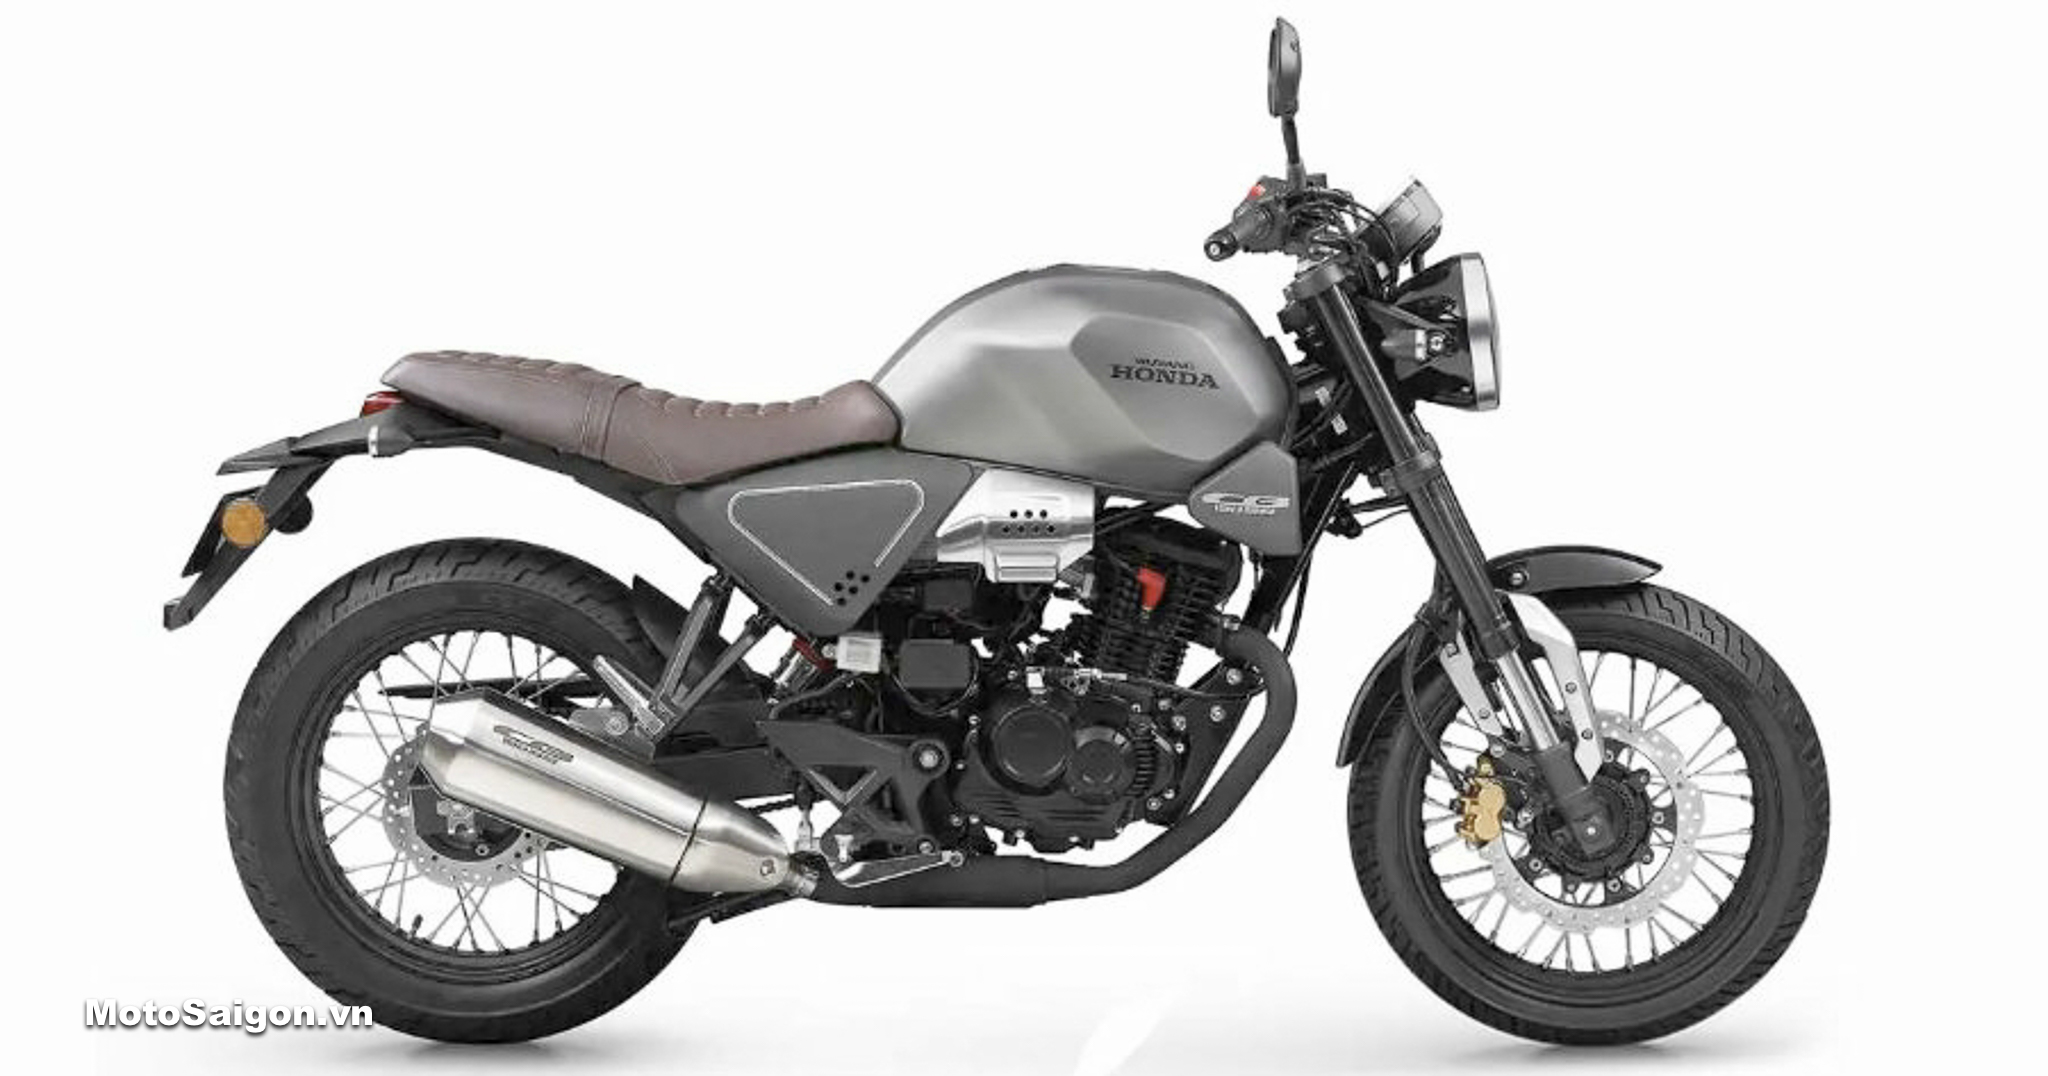 Honda CB190SS 2022 chi tiết hình ảnh giá bán thông số mới nhất